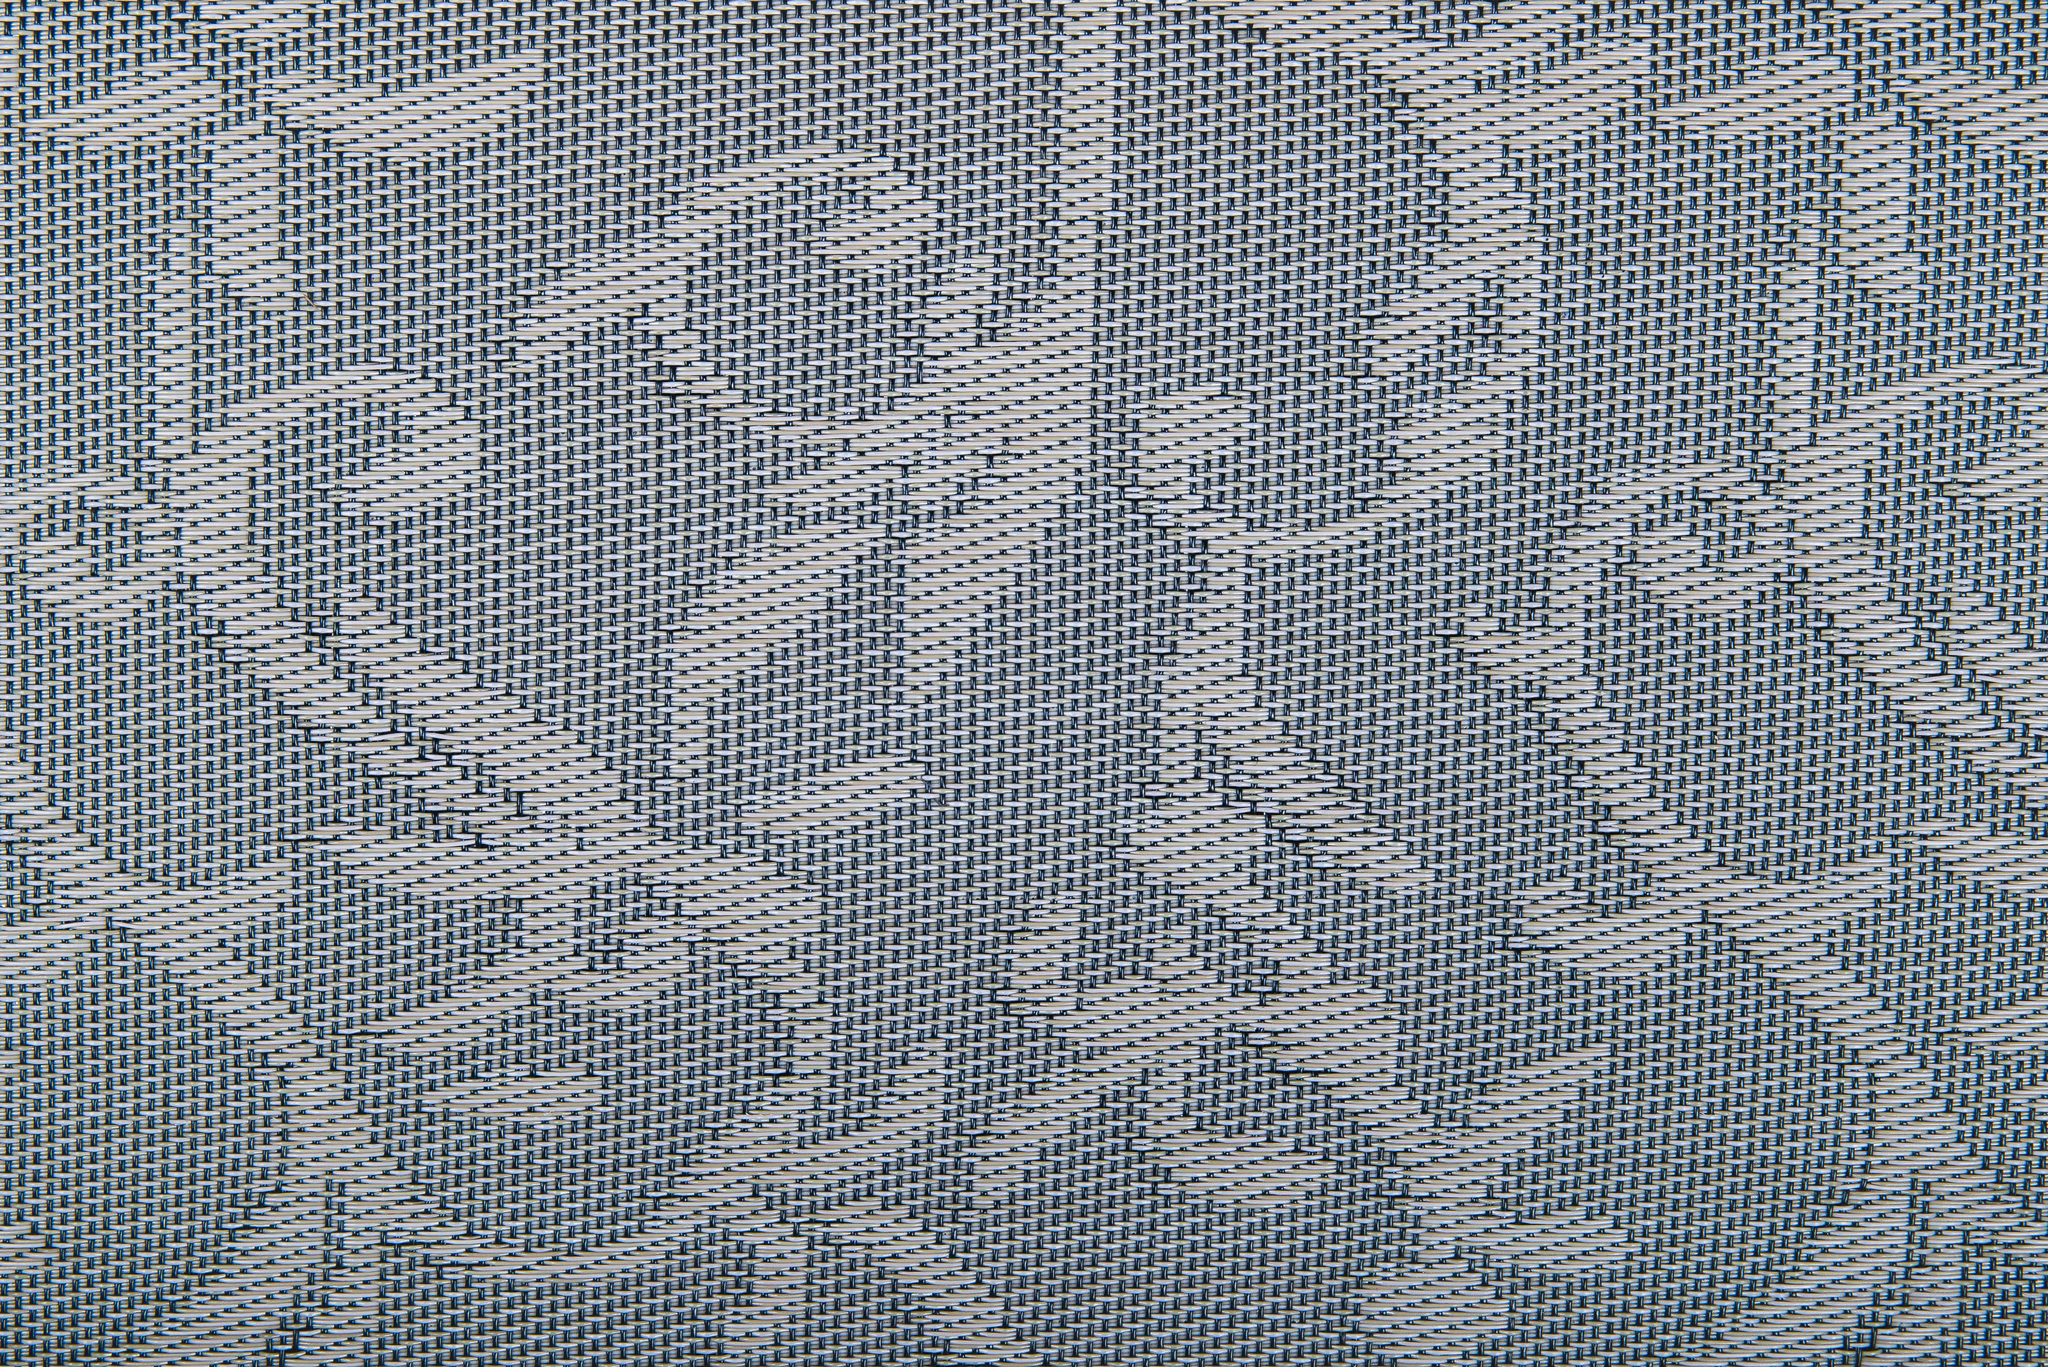 Плетеный виниловый пол Hoffmann - Decoration (ECO - 8009 H)